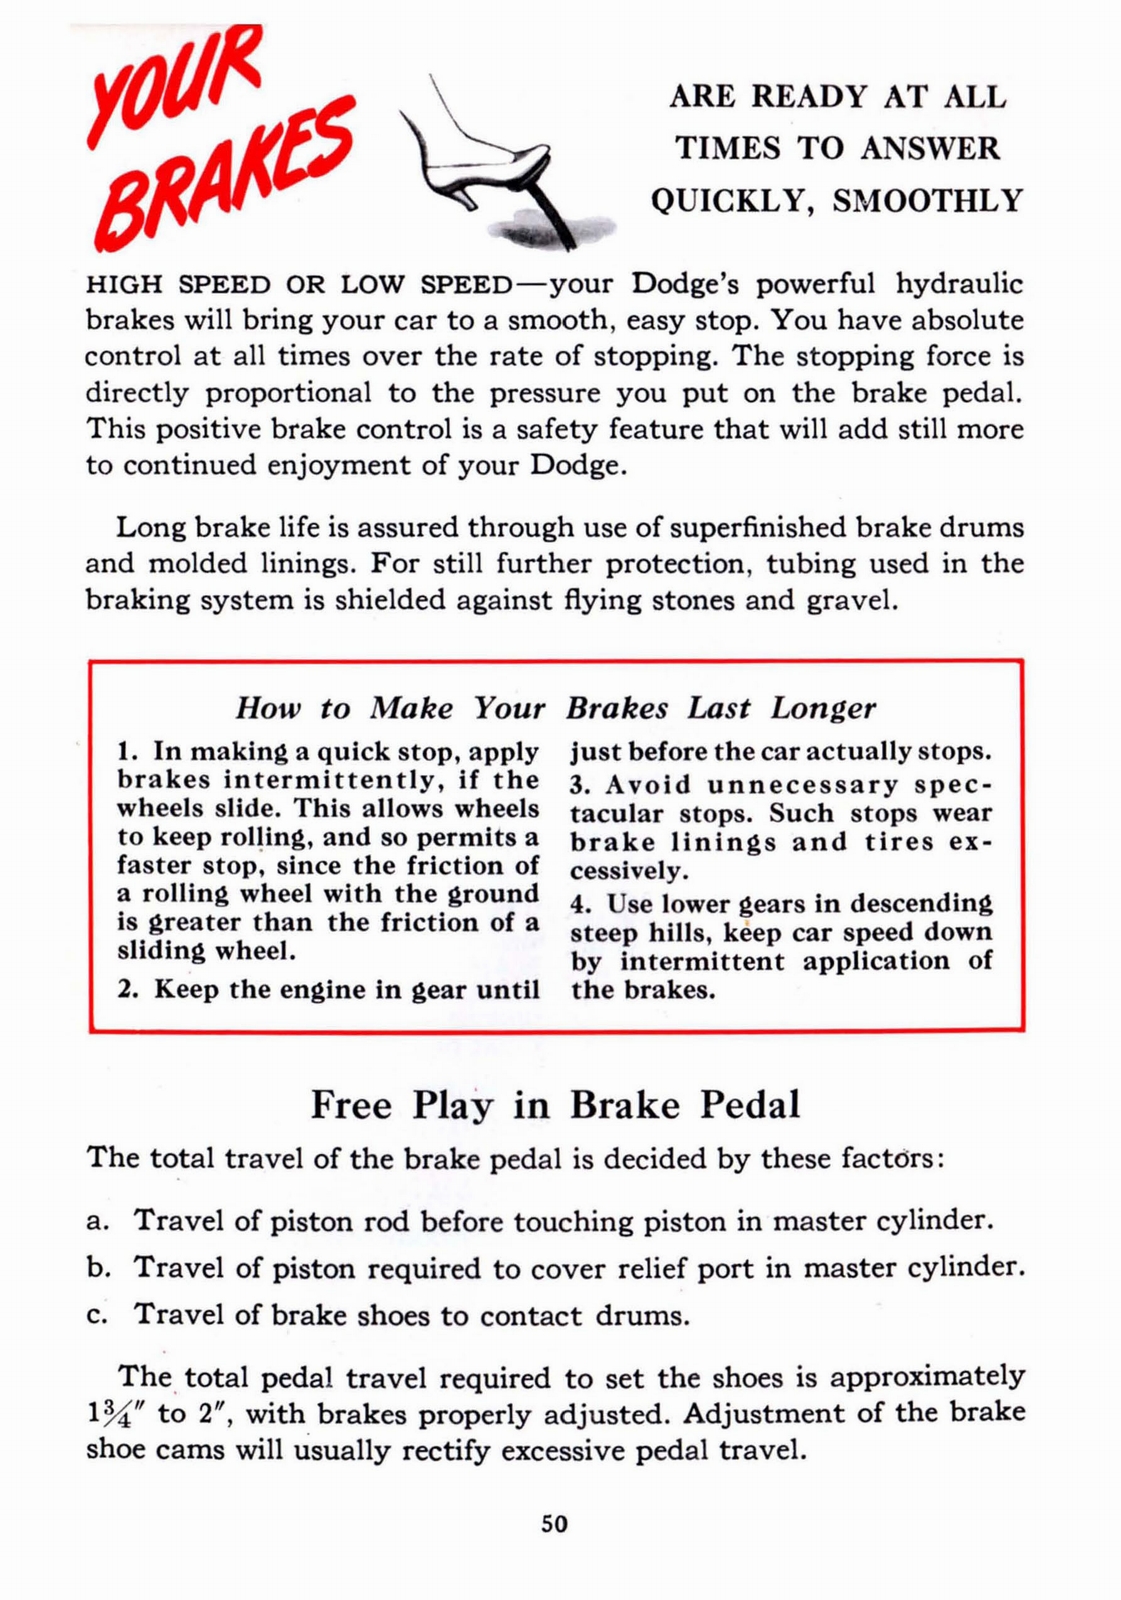 n_1941 Dodge Owners Manual-50.jpg